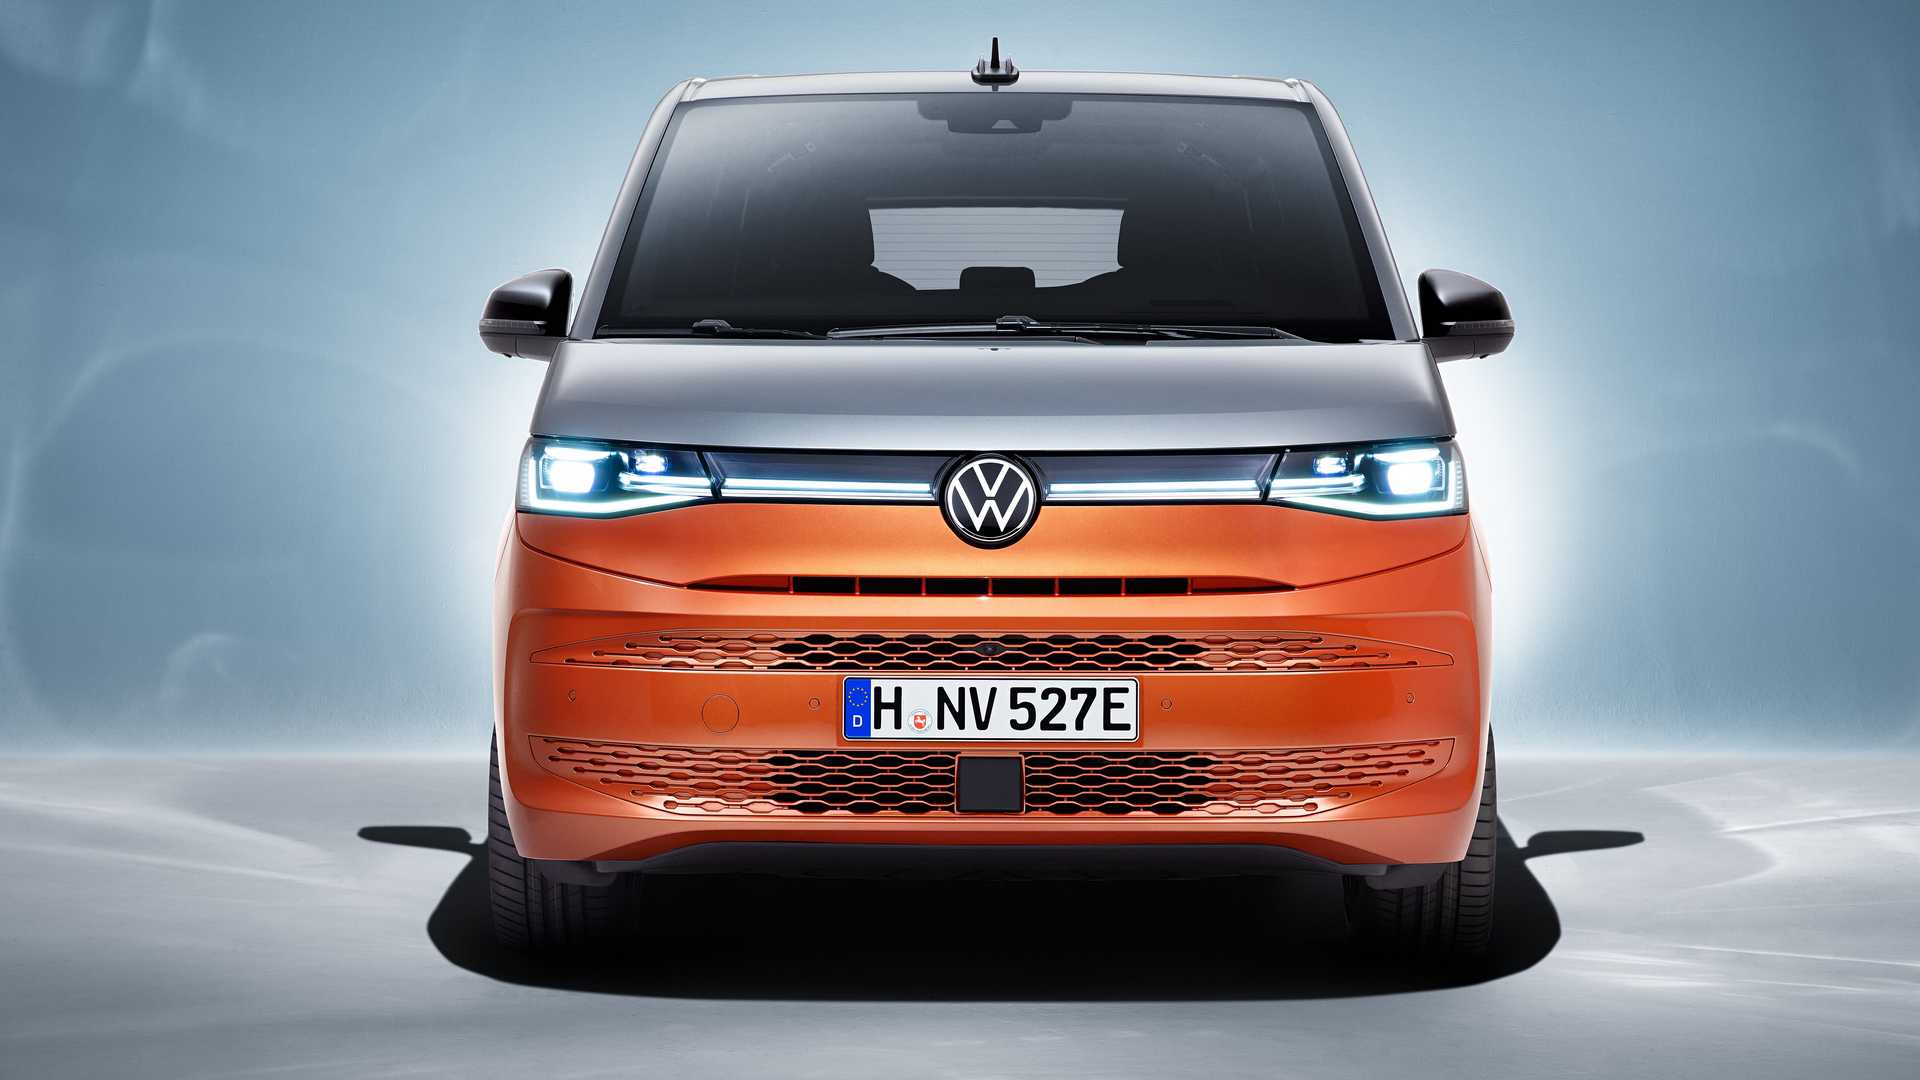 Volkswagen Multivan